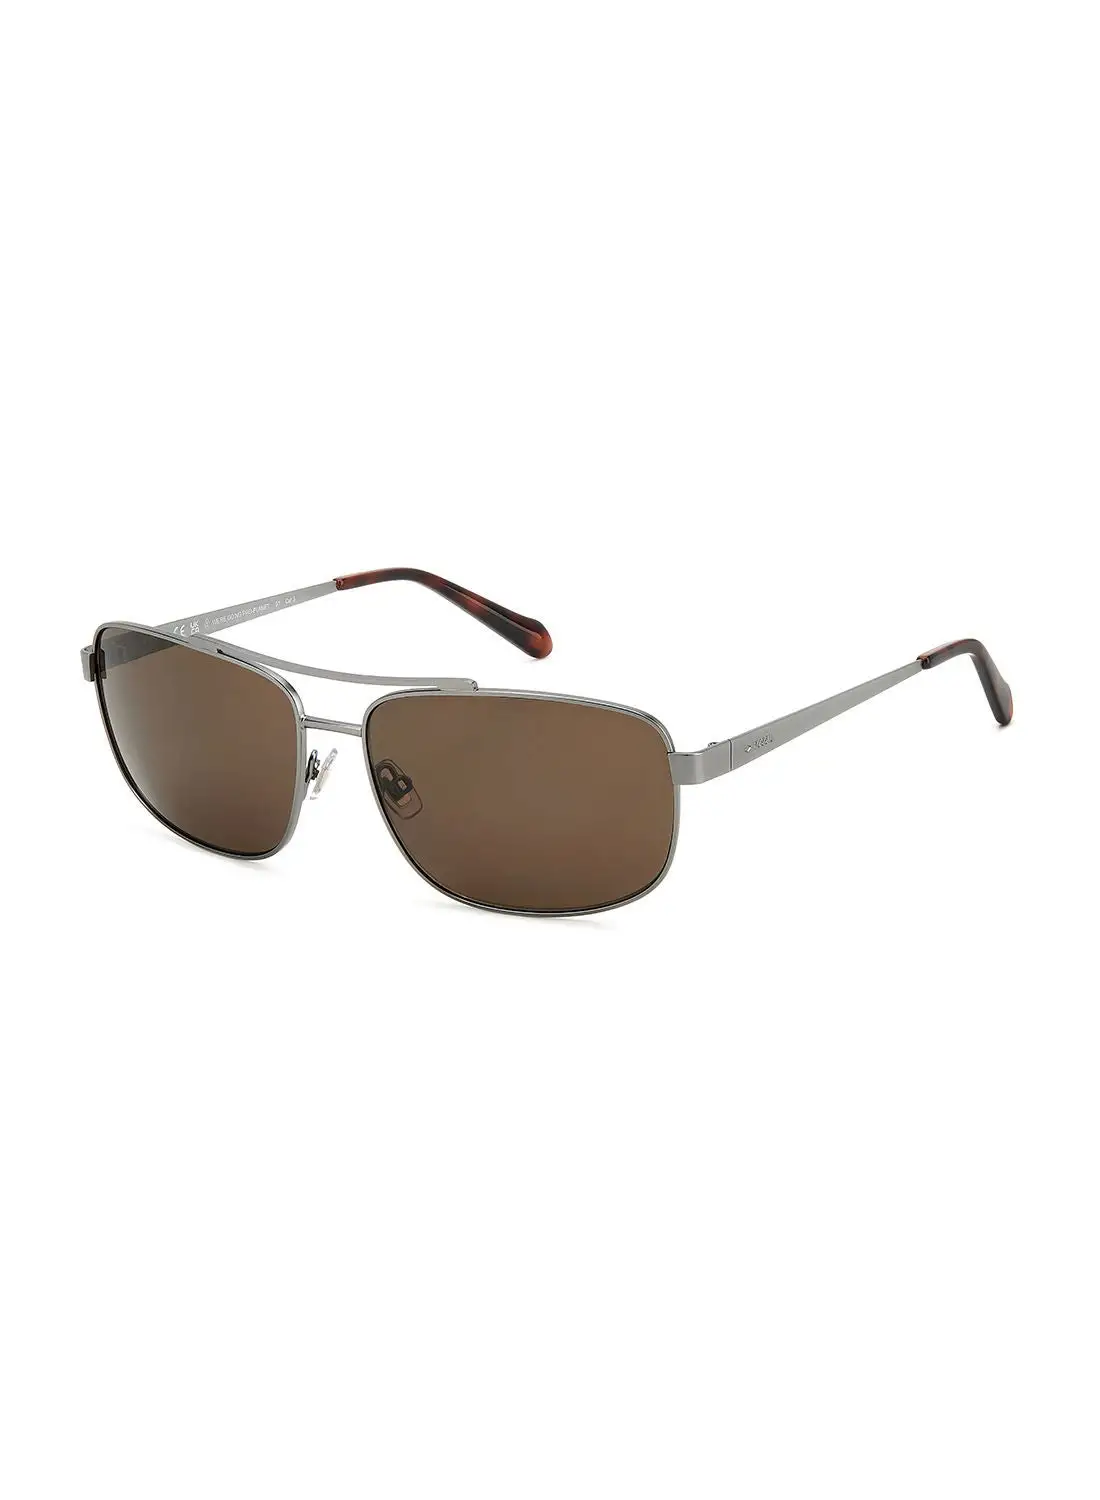 FOSSIL Men's UV Protection Rectangular Sunglasses - Fos 2130/G/S Mtdk Ruth 61 - Lens Size: 61 Mm